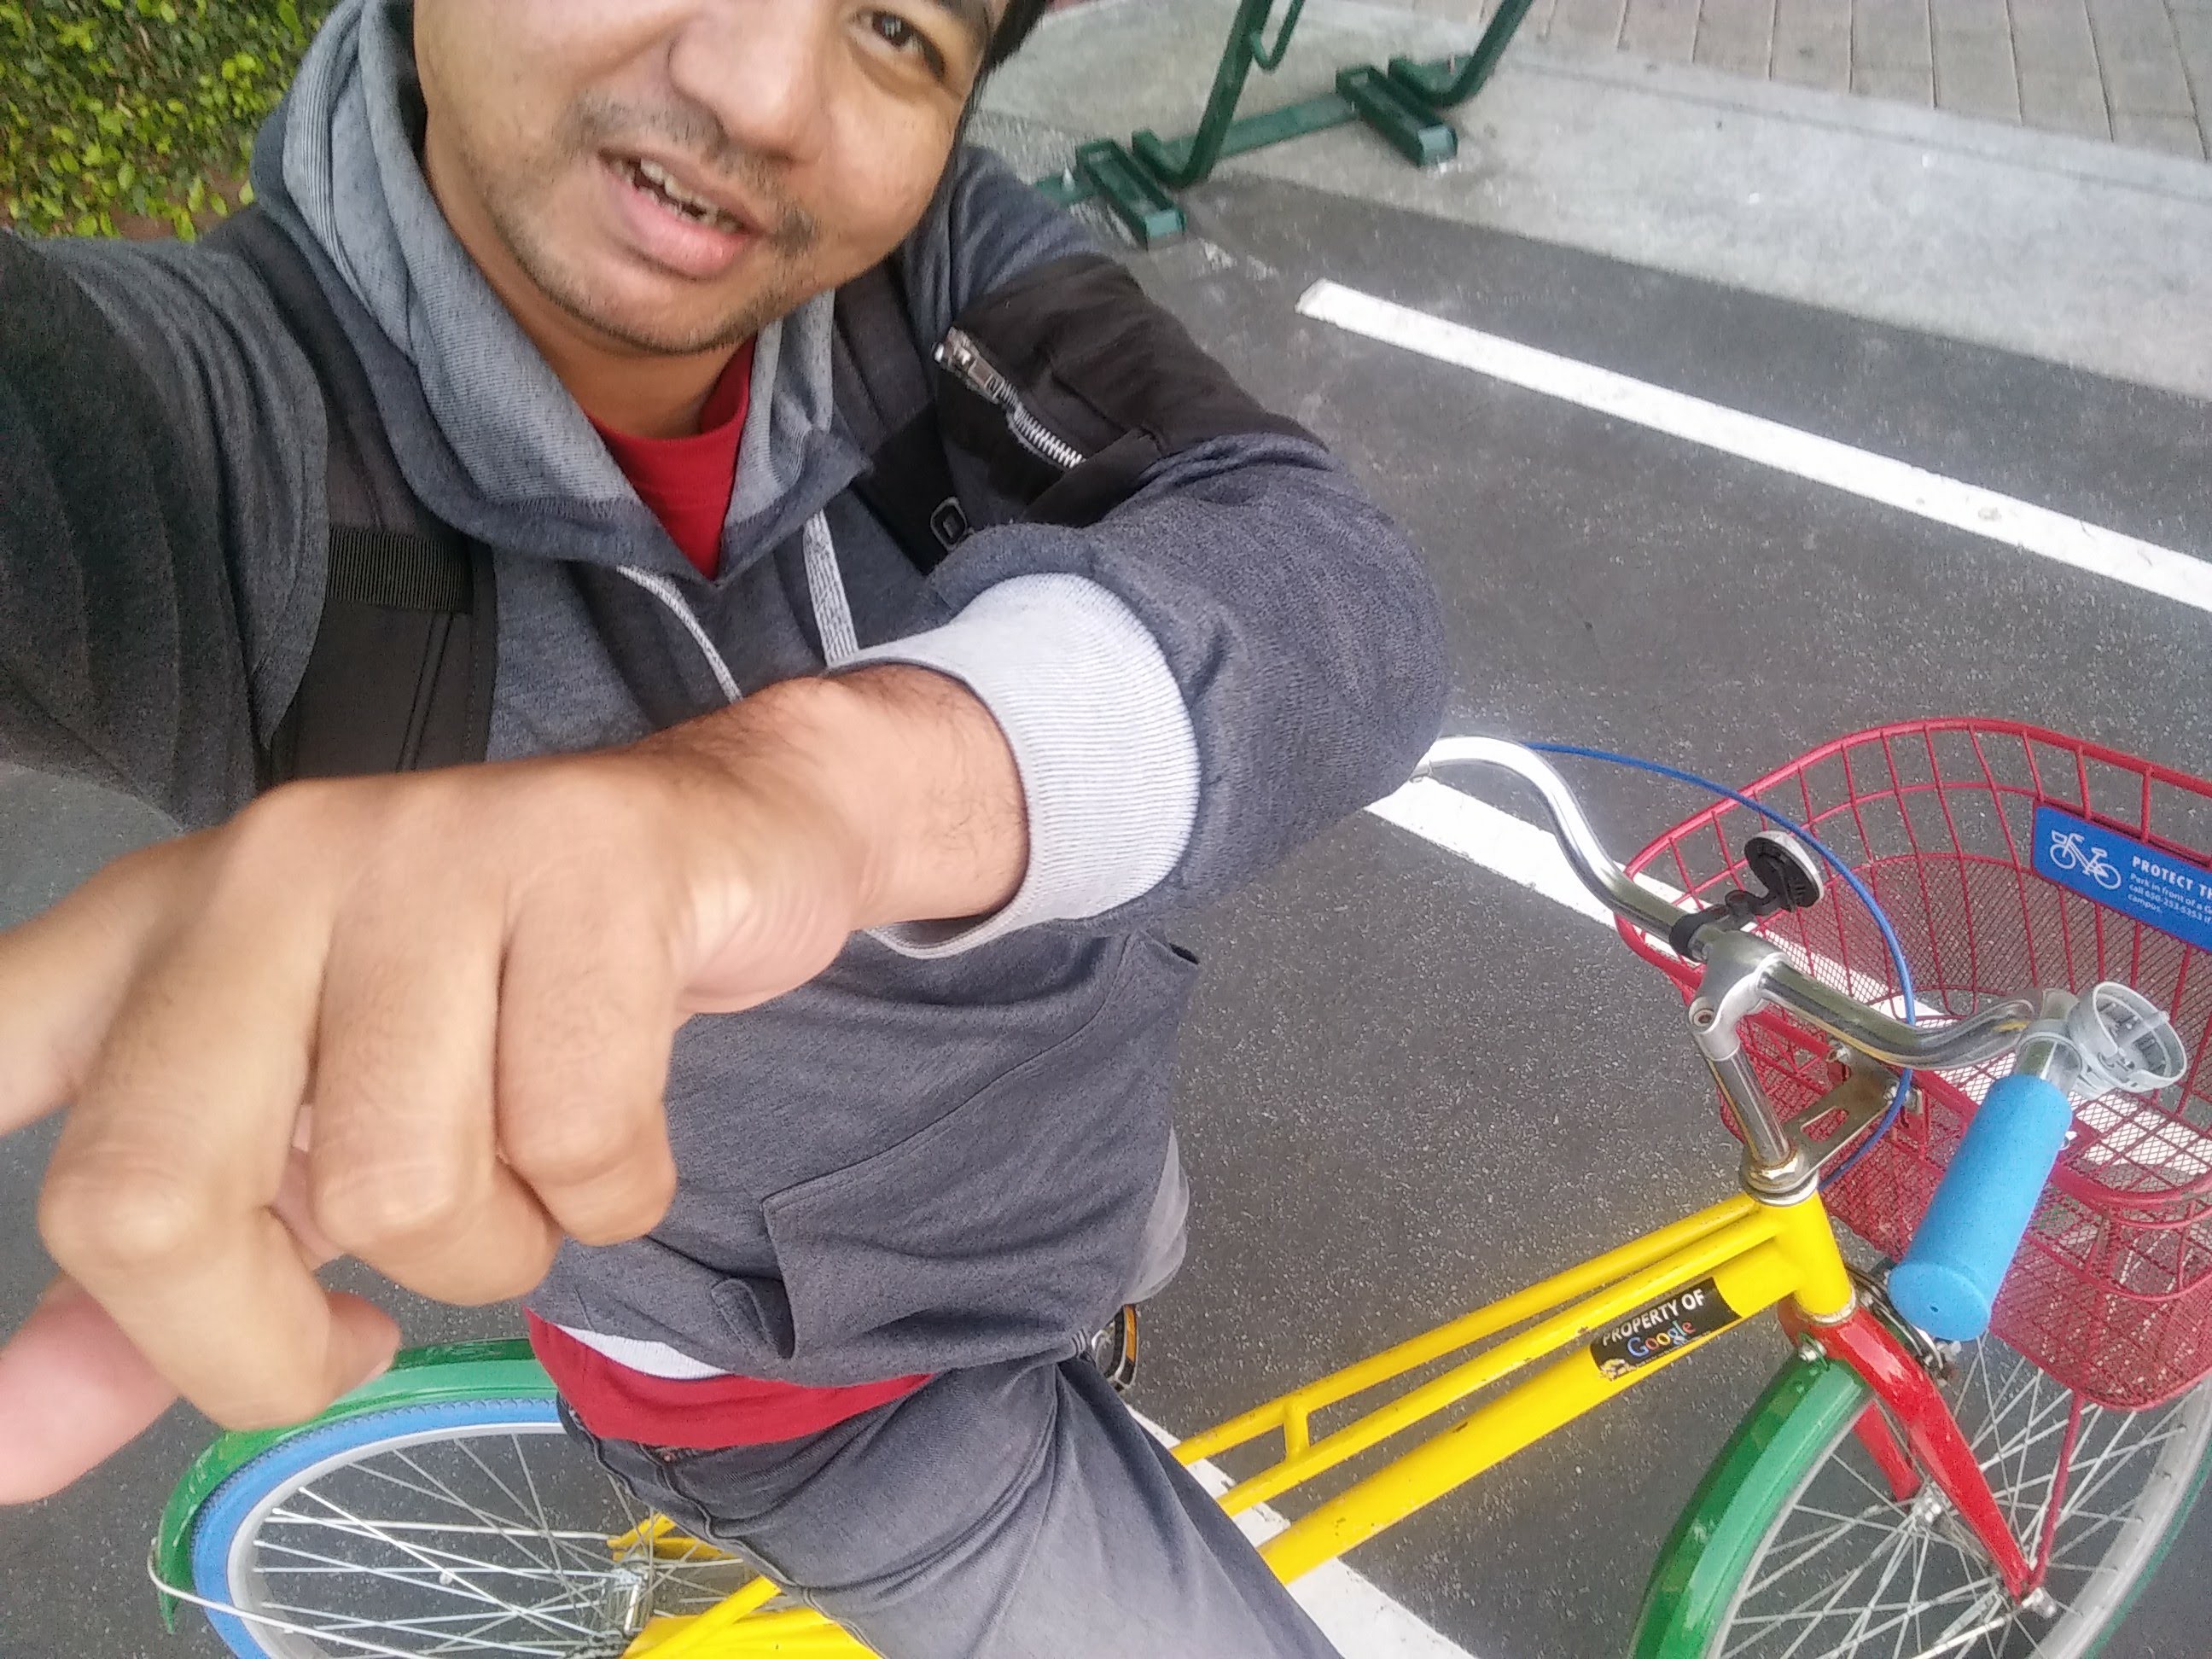 Sulitnya mengendari sepeda sambil selfie.